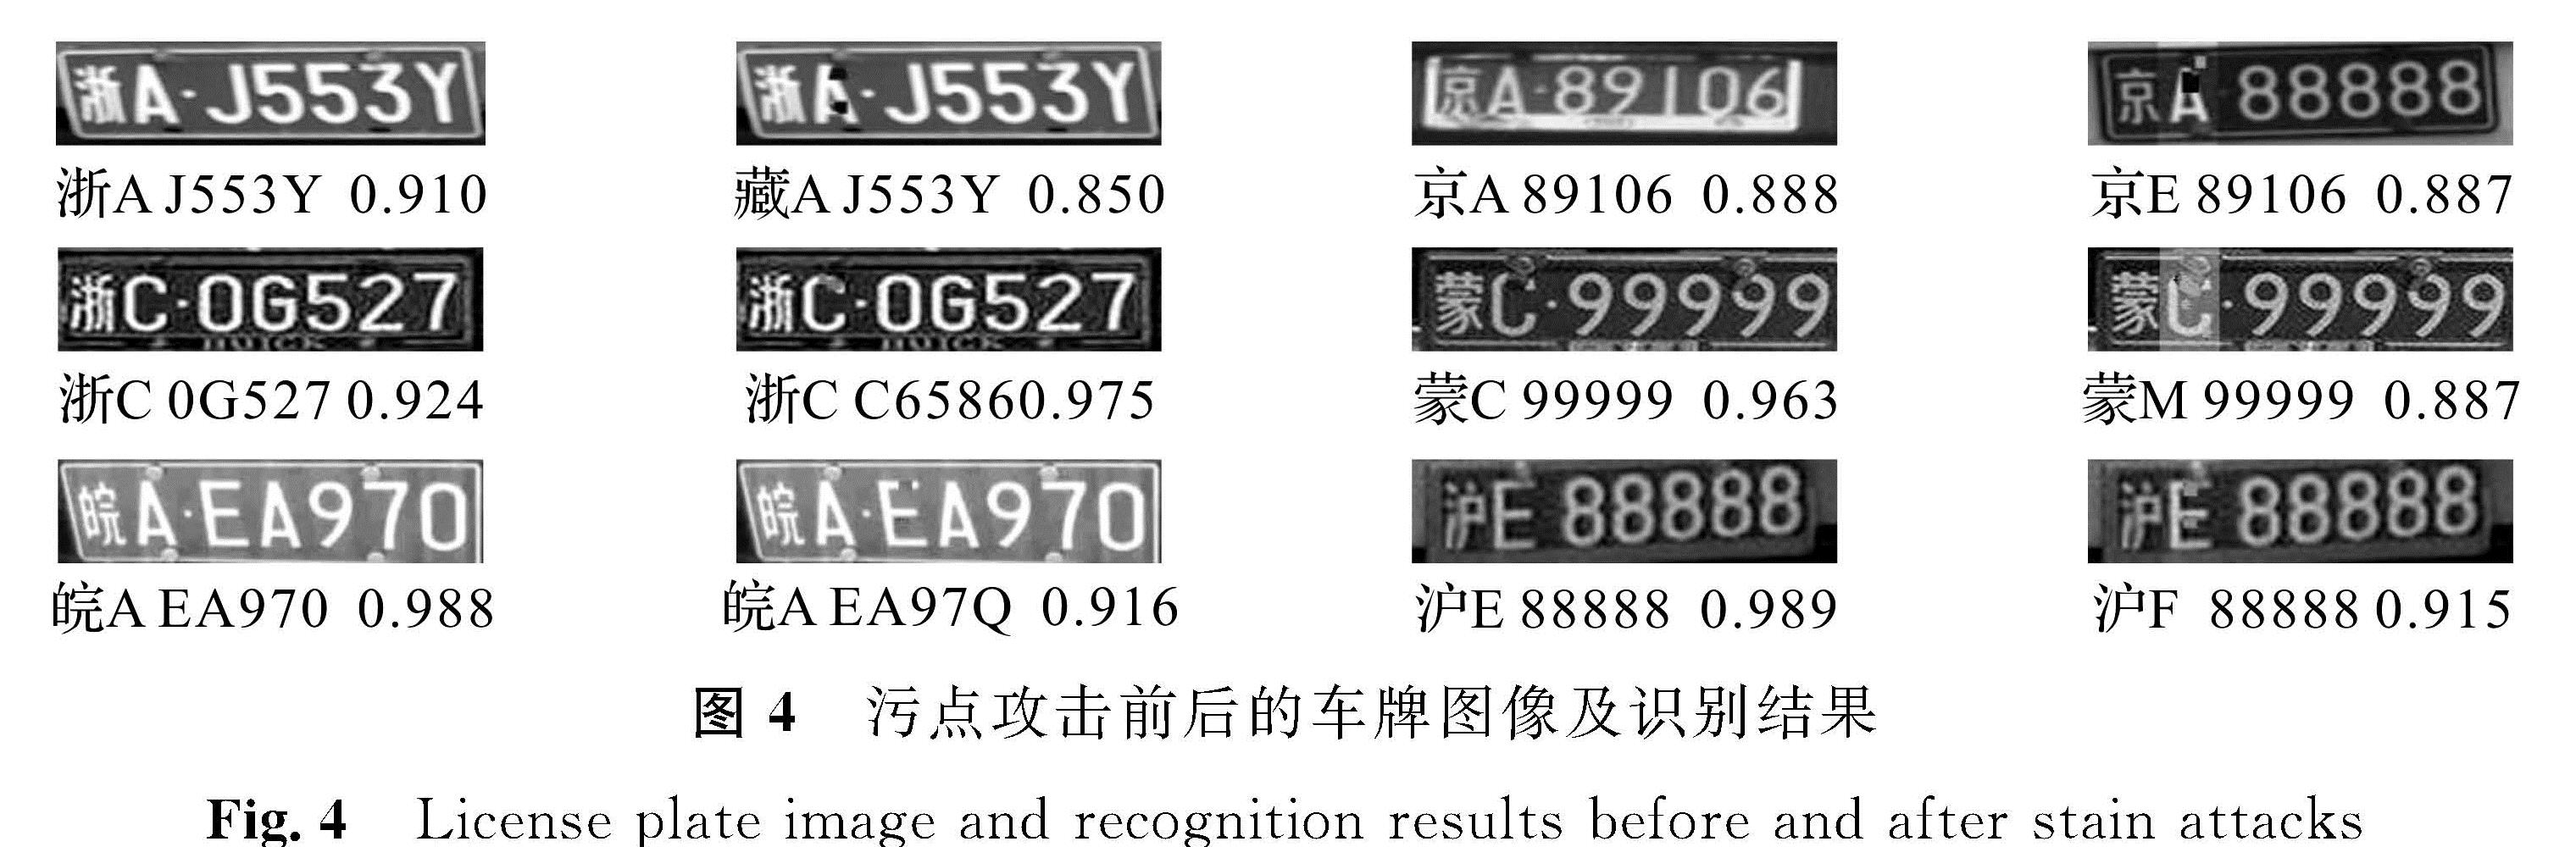 图4 污点攻击前后的车牌图像及识别结果<br/>Fig.4 License plate image and recognition results before and after stain attacks